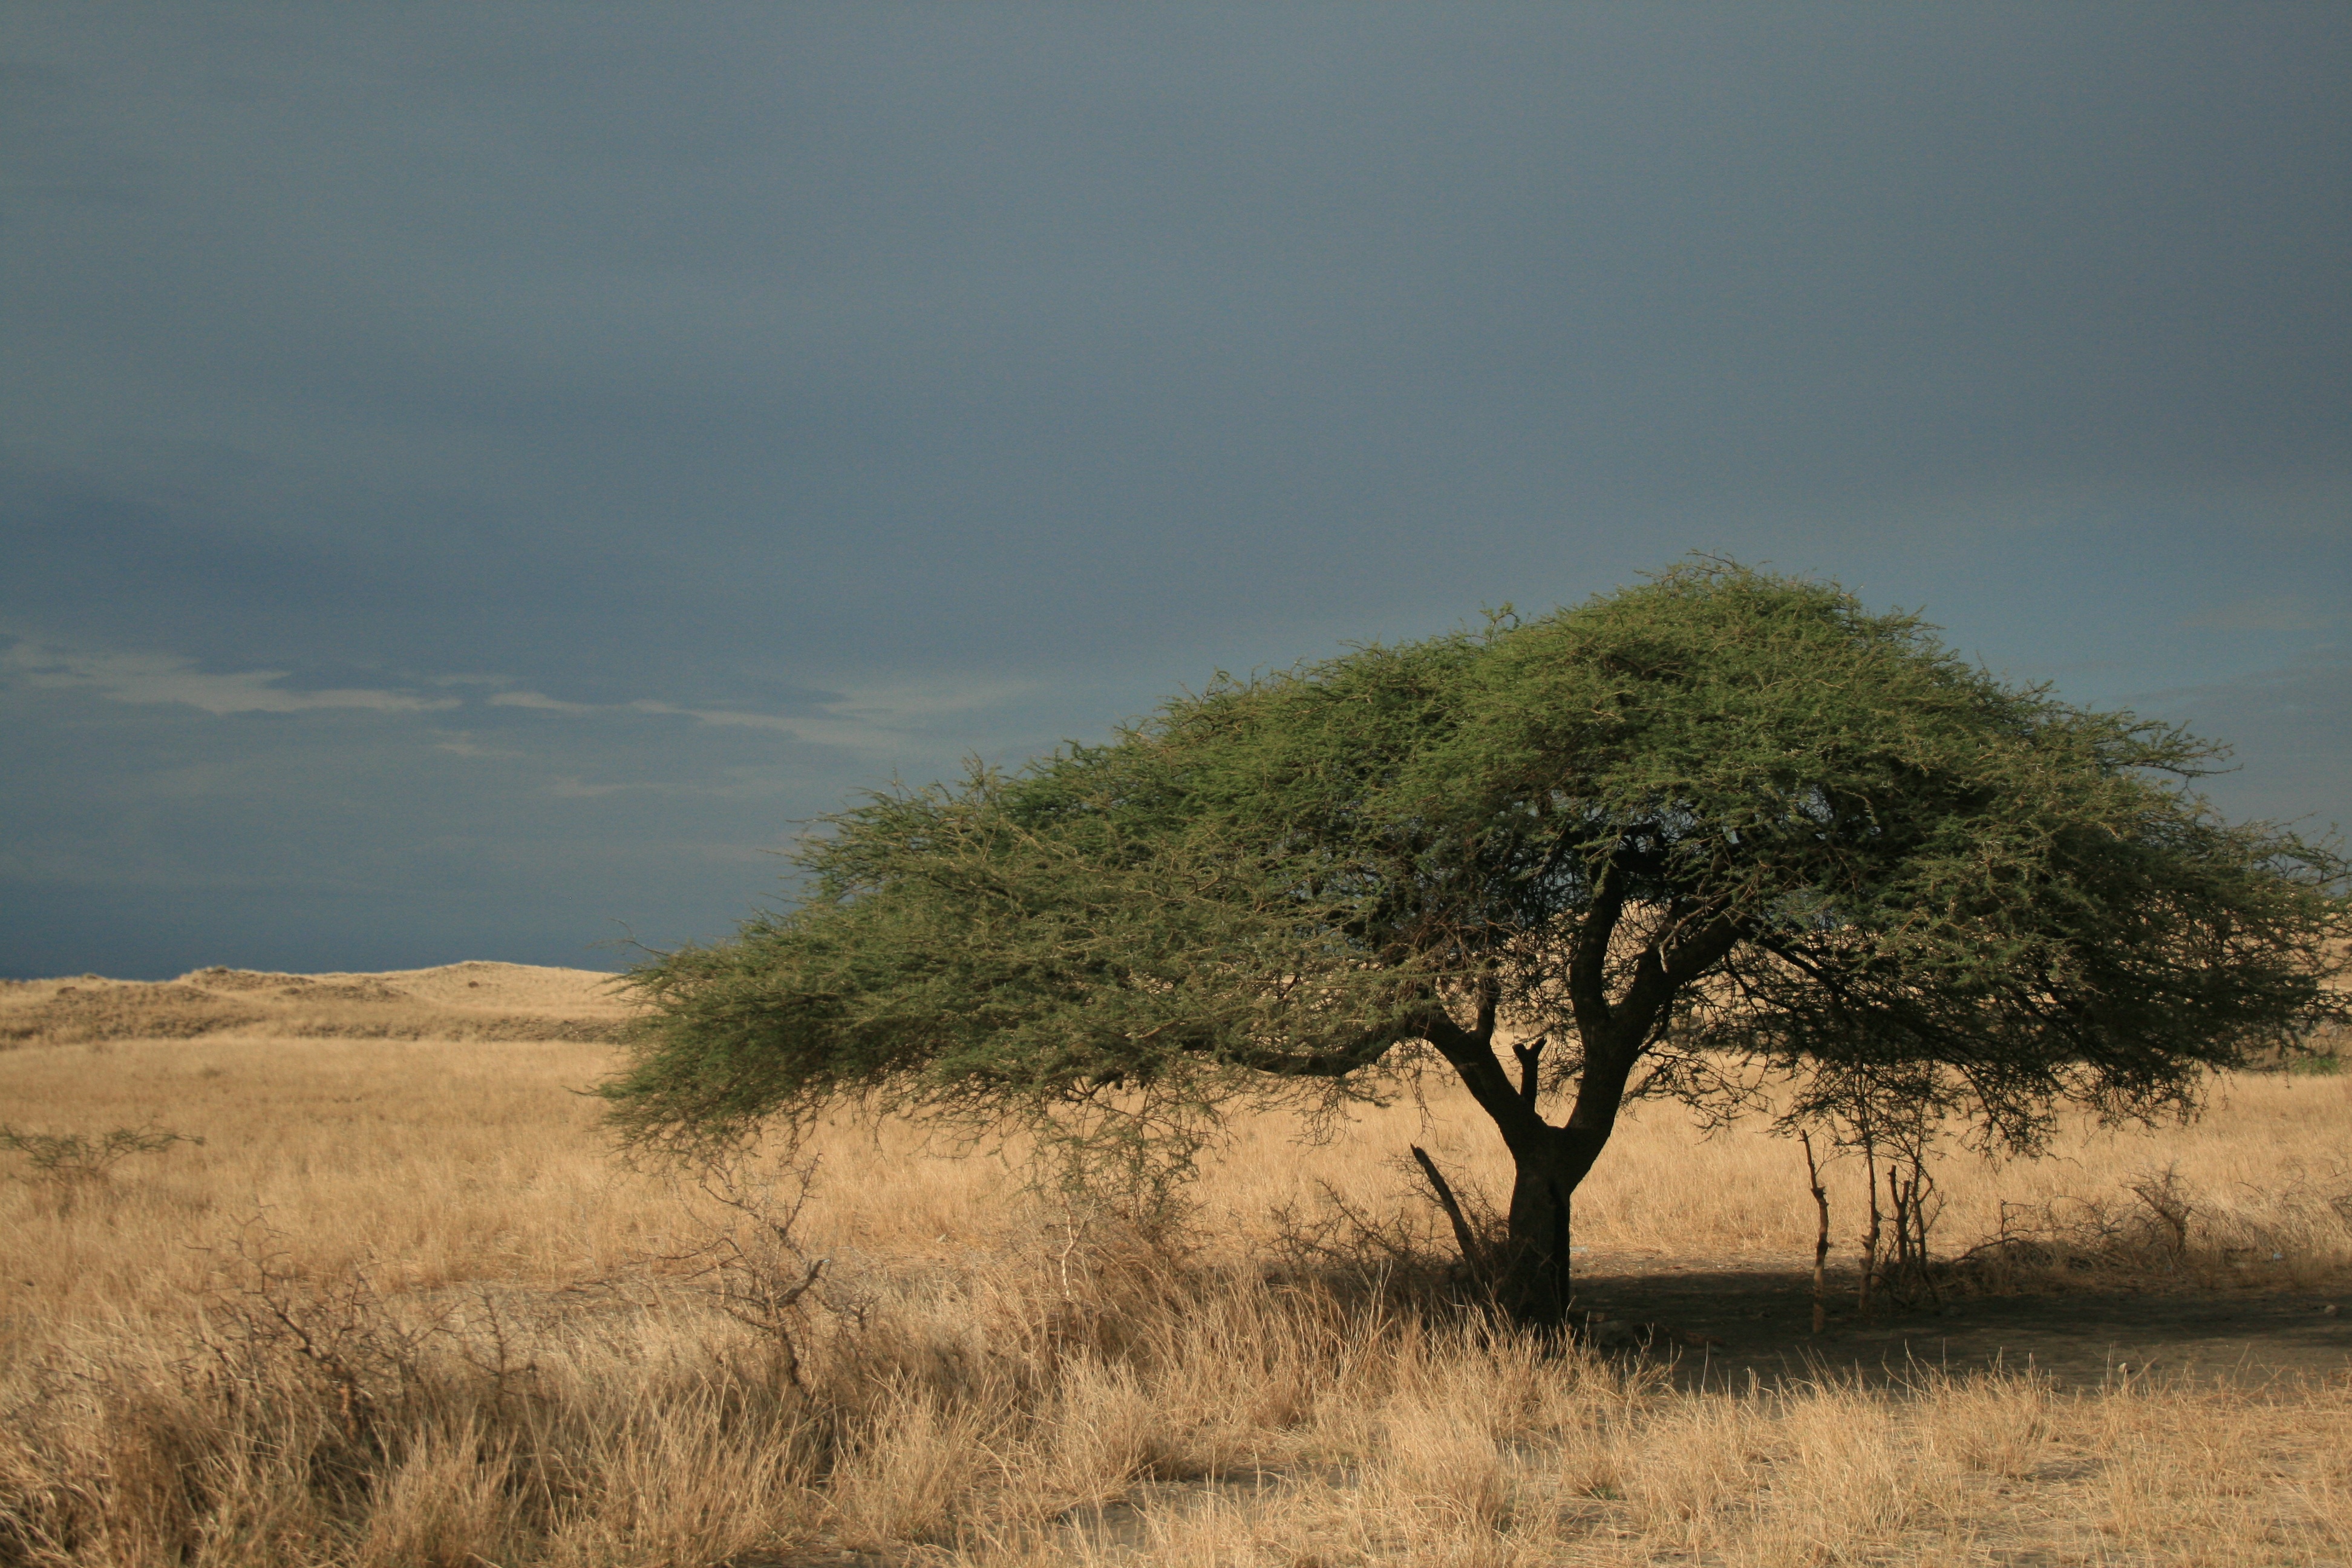 Acacia Tree in savannah, tanzania free image download